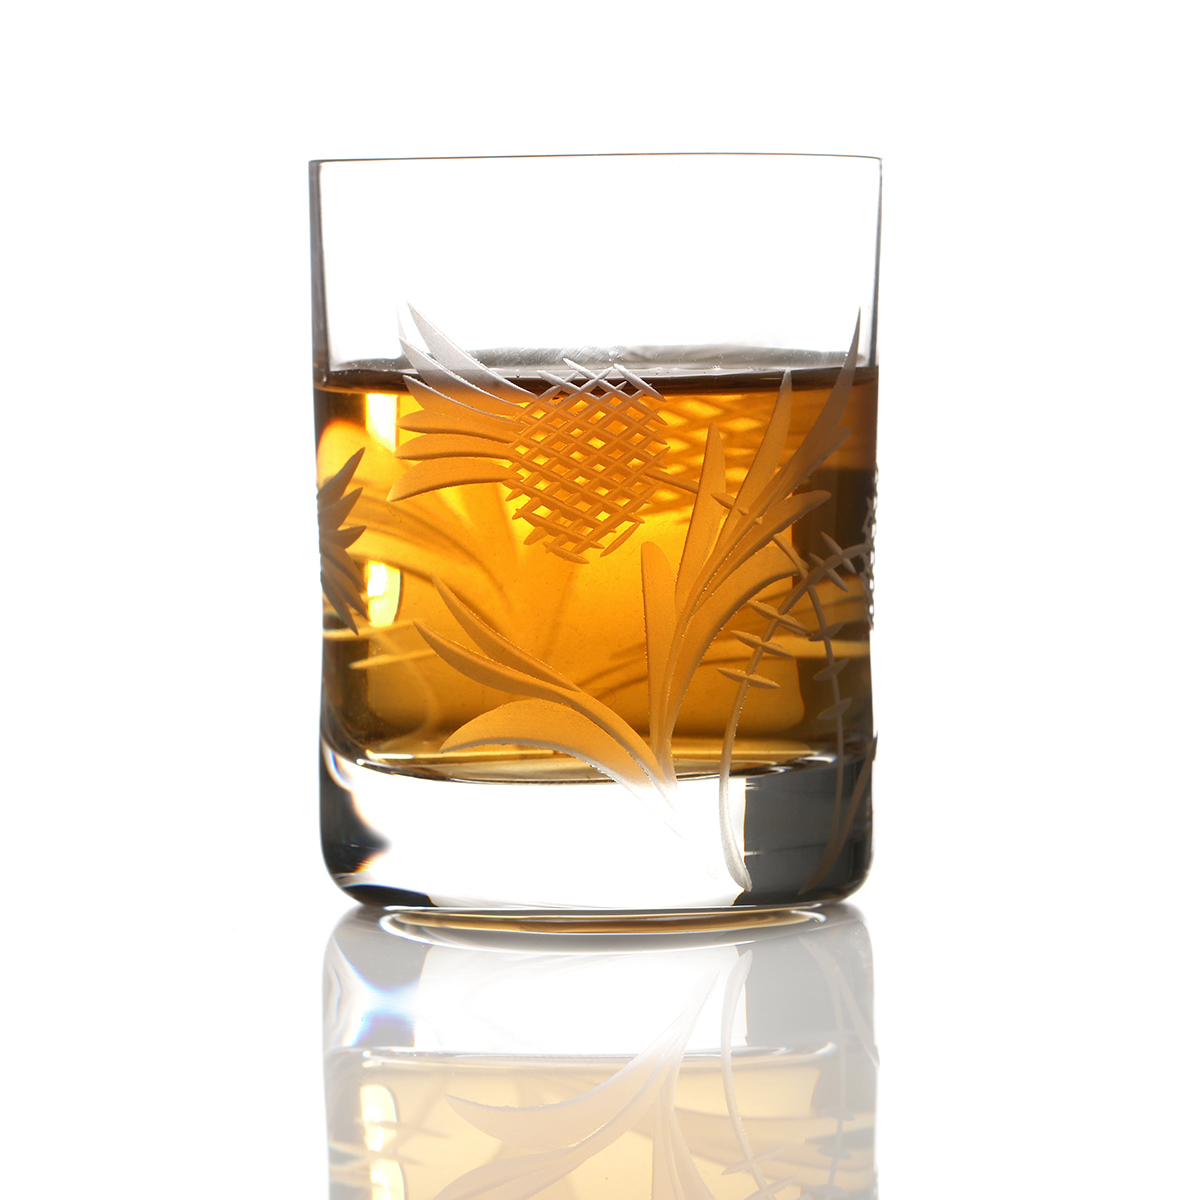 Flower of Scotland Dram - Schottische Distel Kristall Whiskyglas aus Schottland